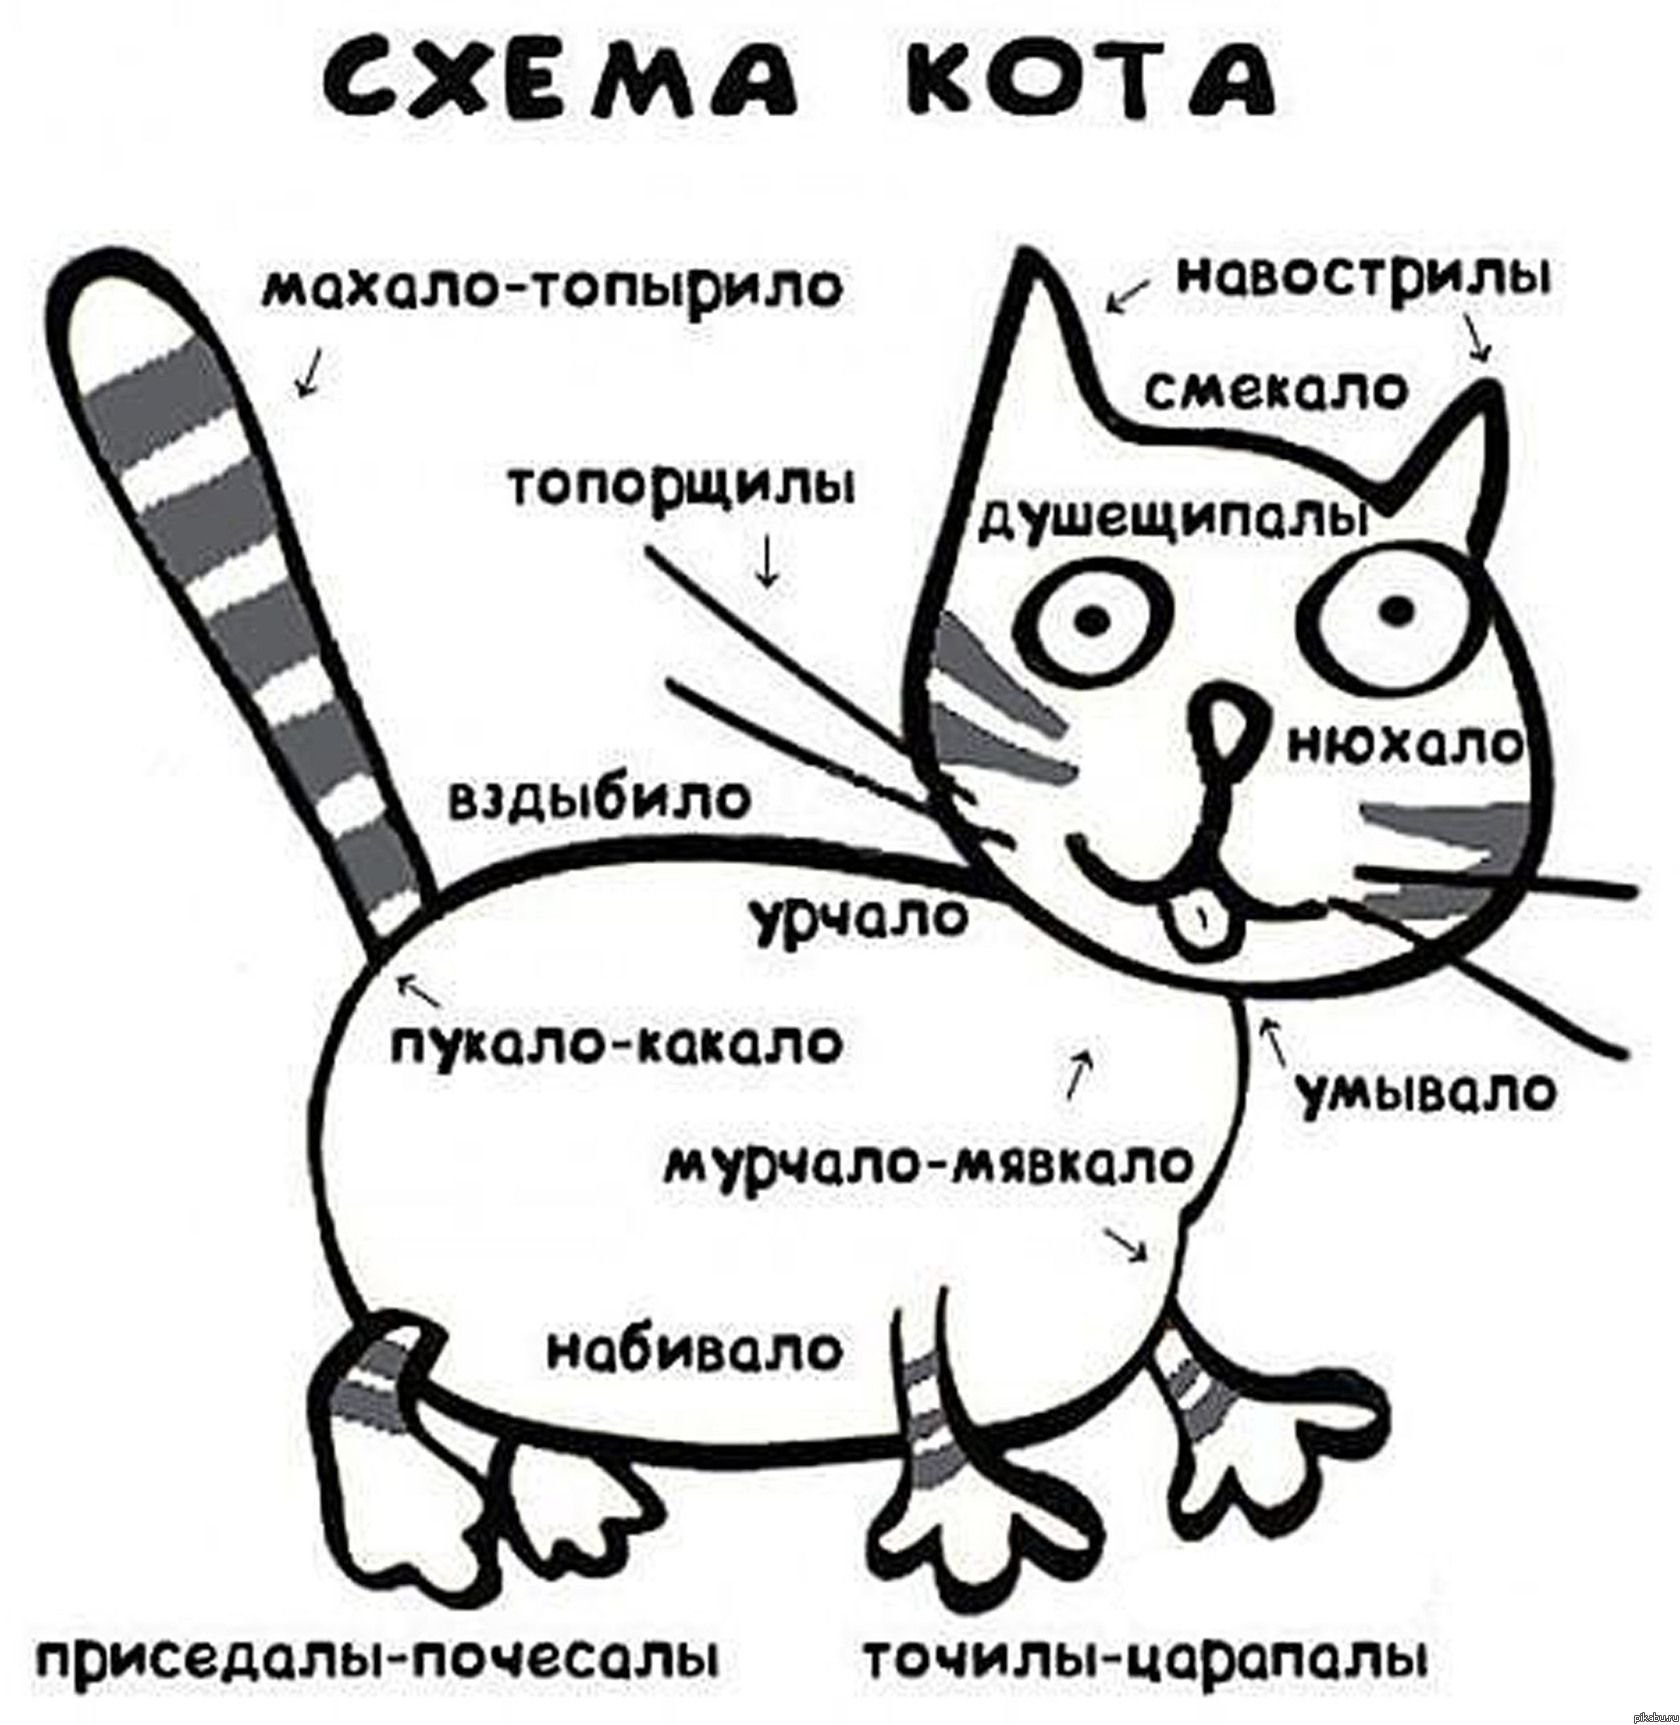 Юмористические описания. Схема кота. Принципиальная схема кота. Шуточная схема кота. Схема кота мурчало.